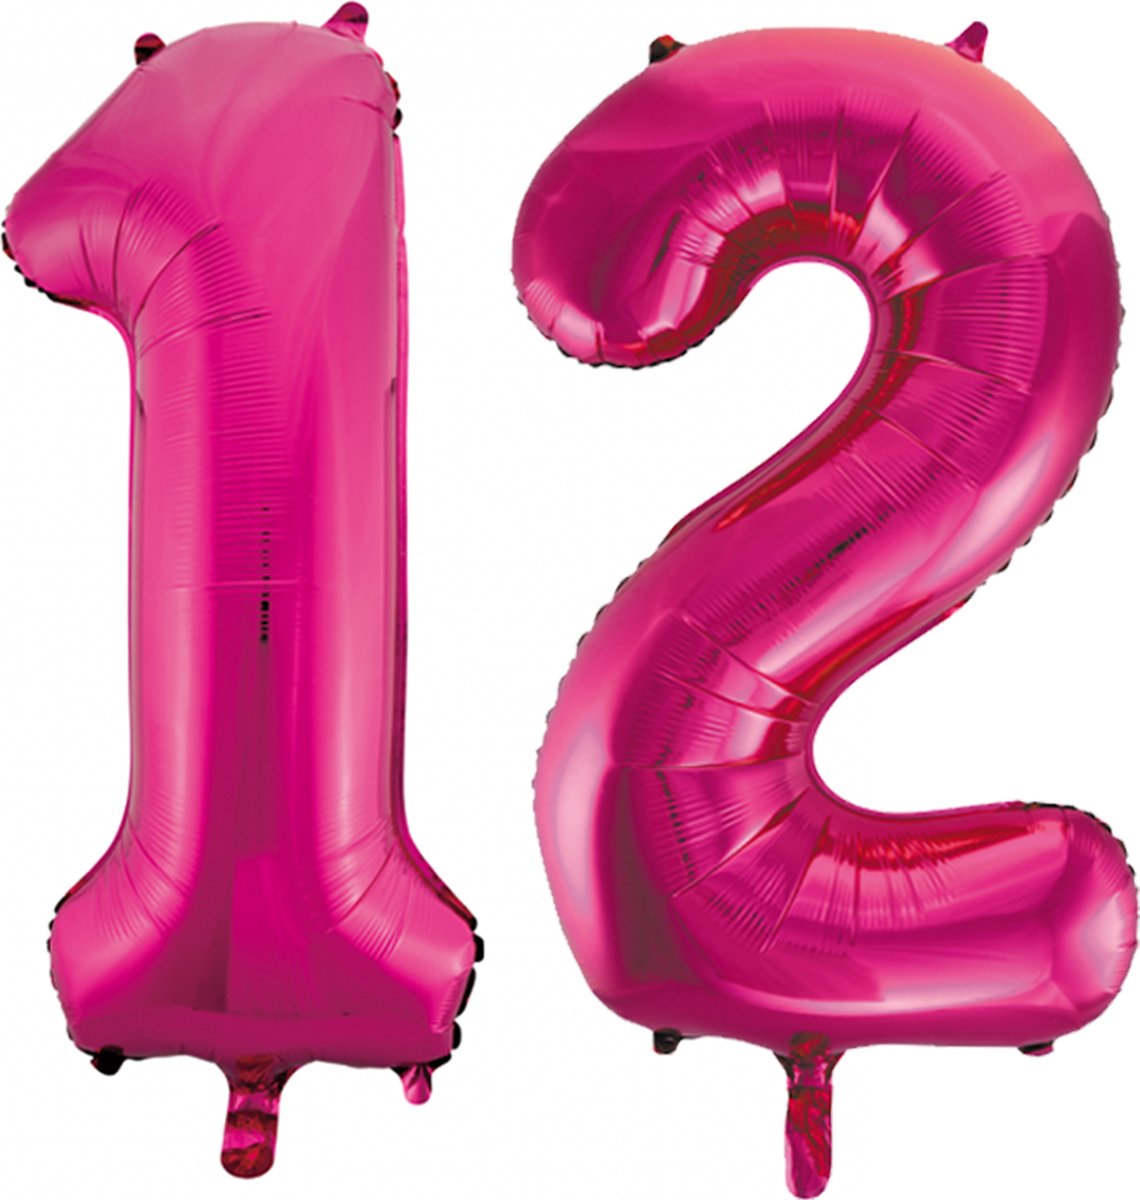 Folie cijfer ballonnen  pink roze 12.